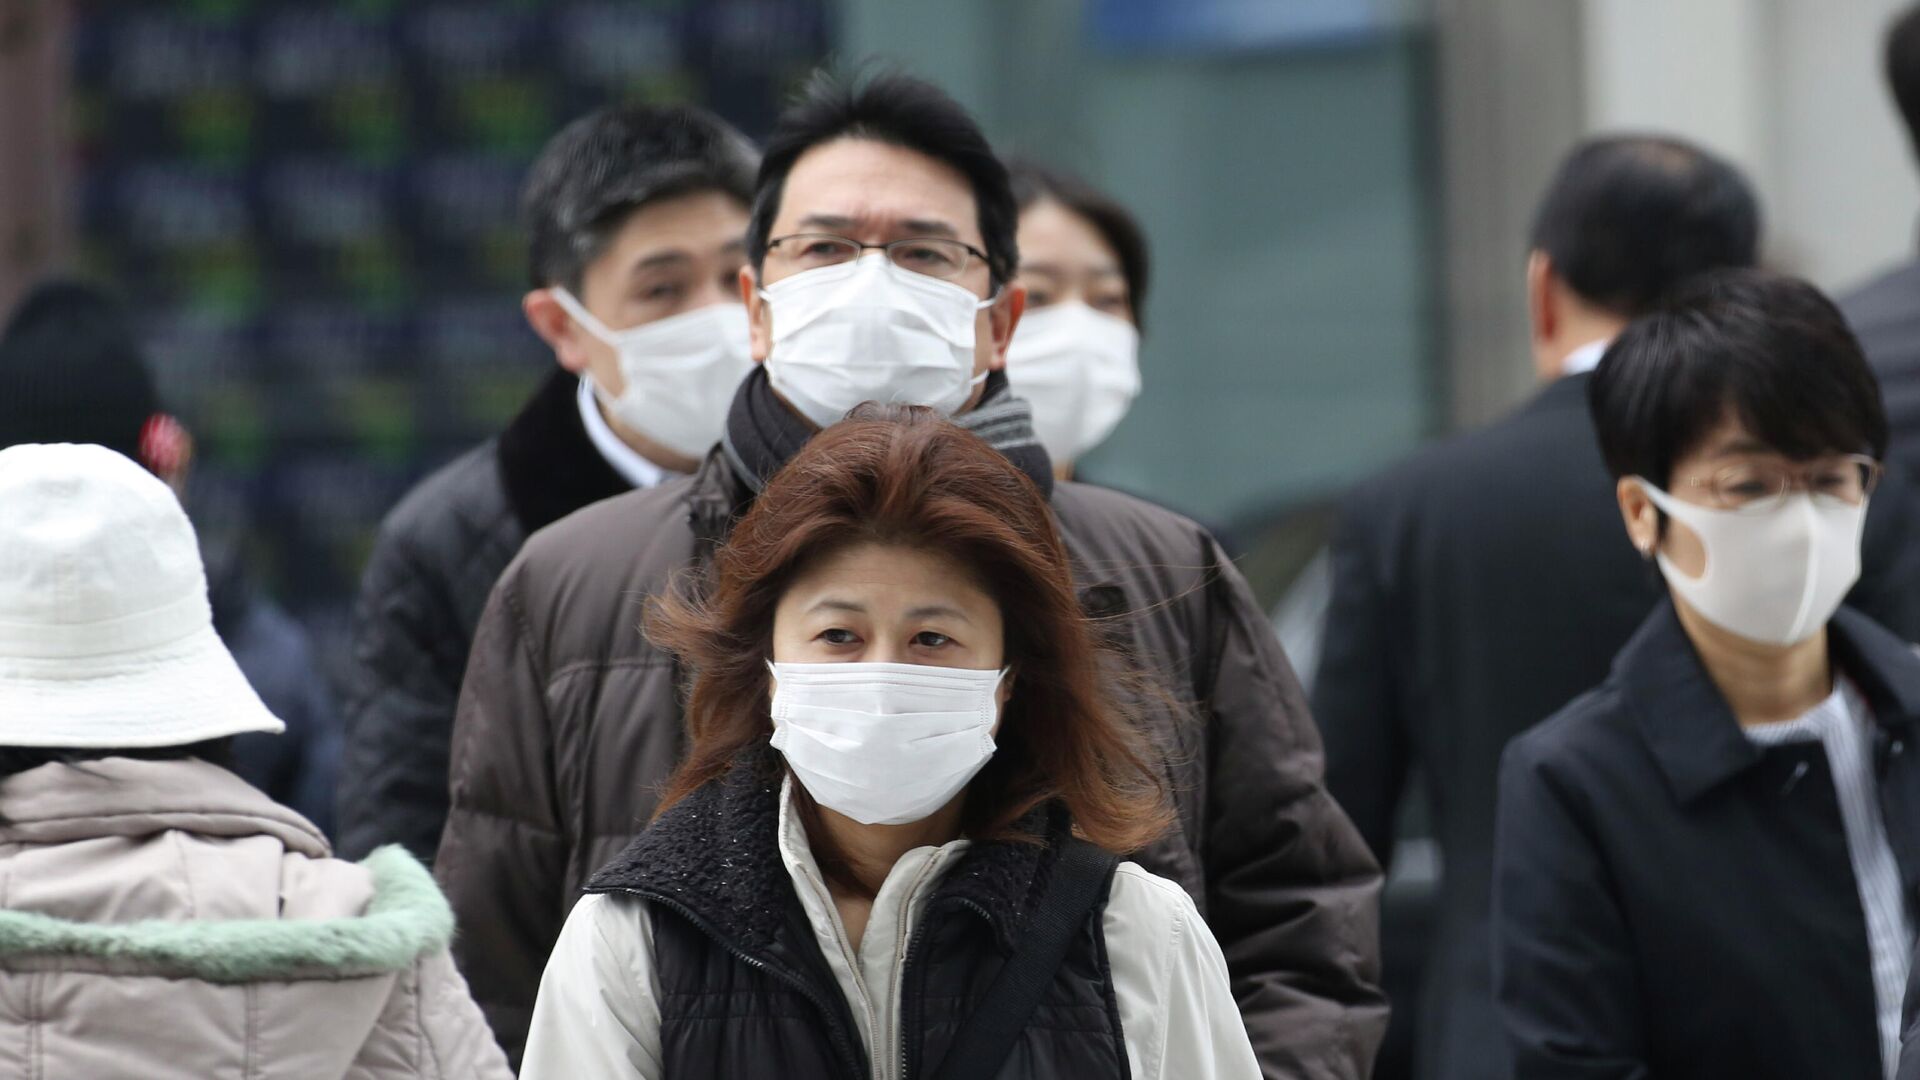 Прохожие в защитных масках на улице Токио, Япония. 17 февраля 2020 - РИА Новости, 1920, 05.12.2020